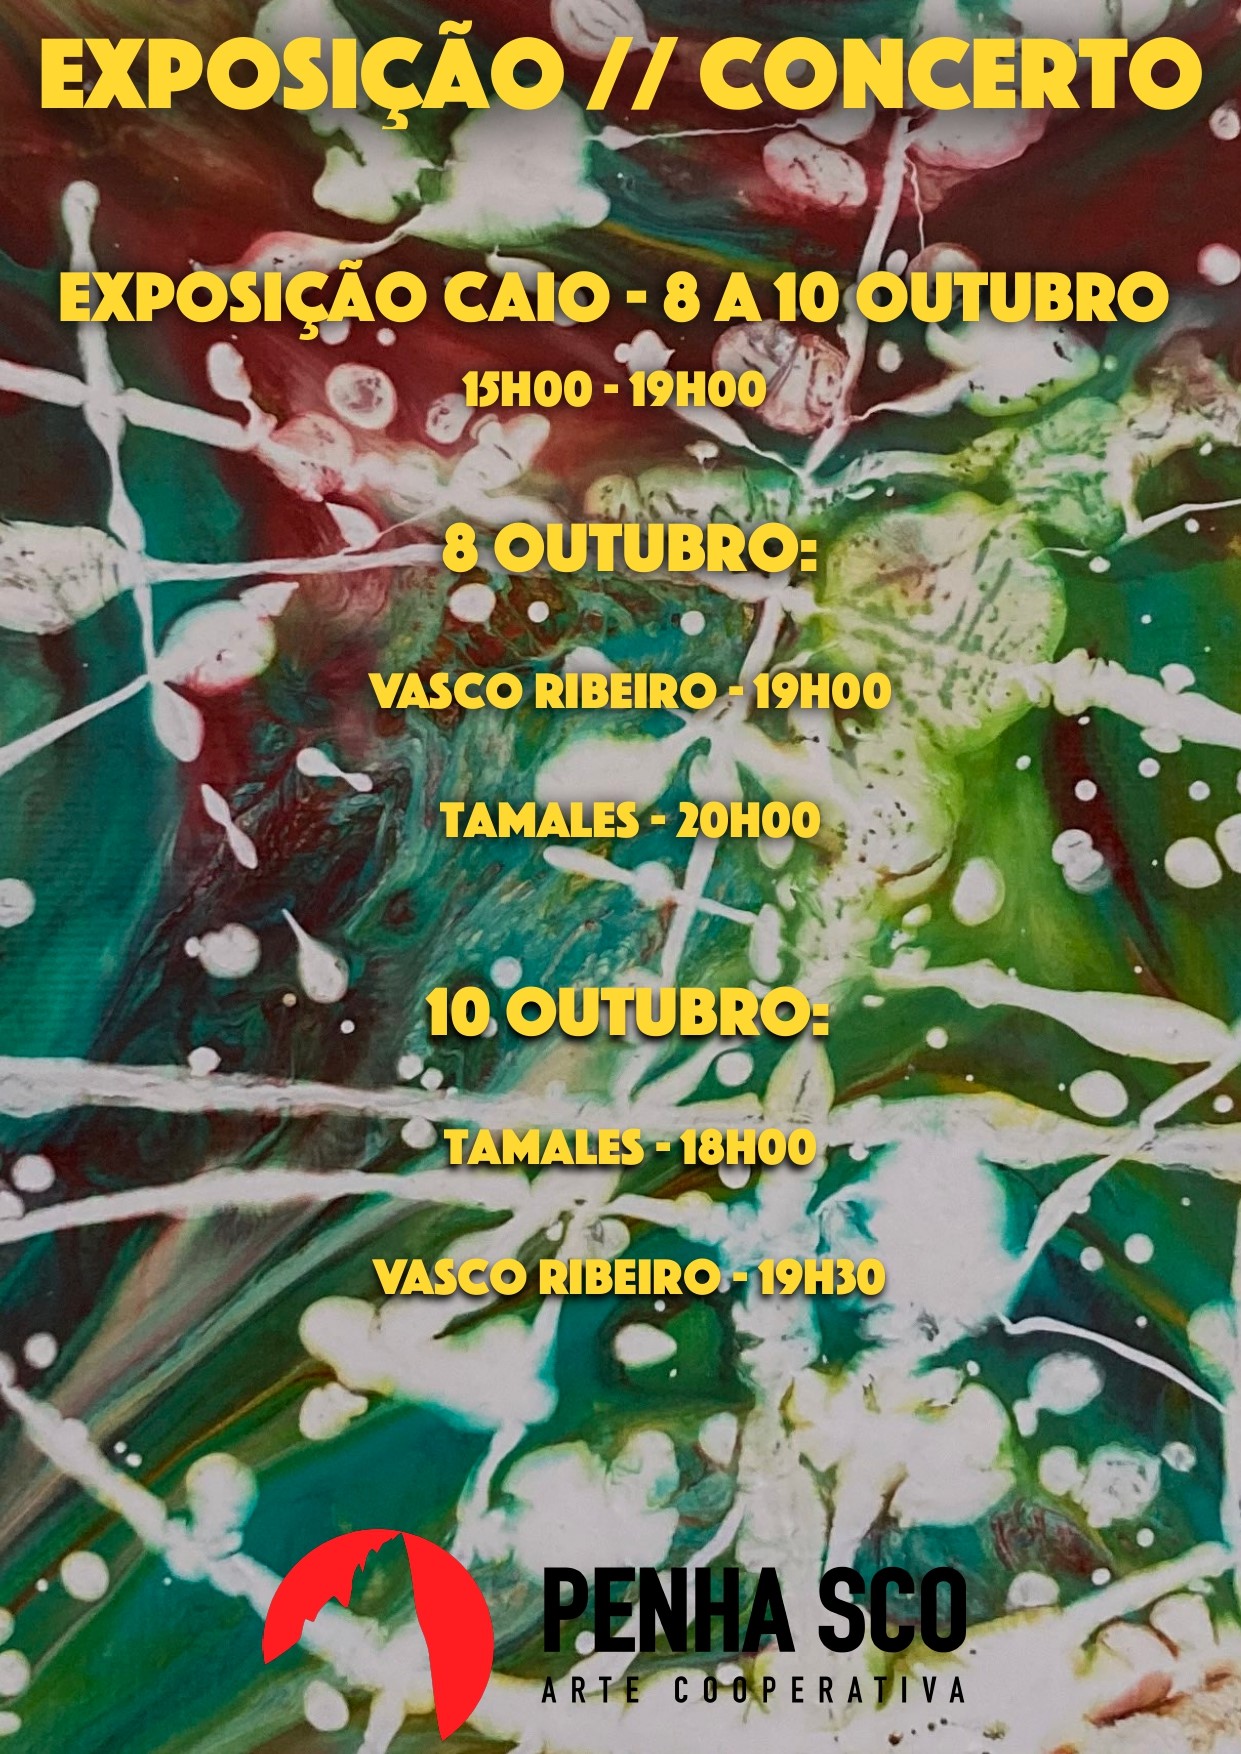 EXPO Caio// Concertos Tamales | Vasco Ribeiro